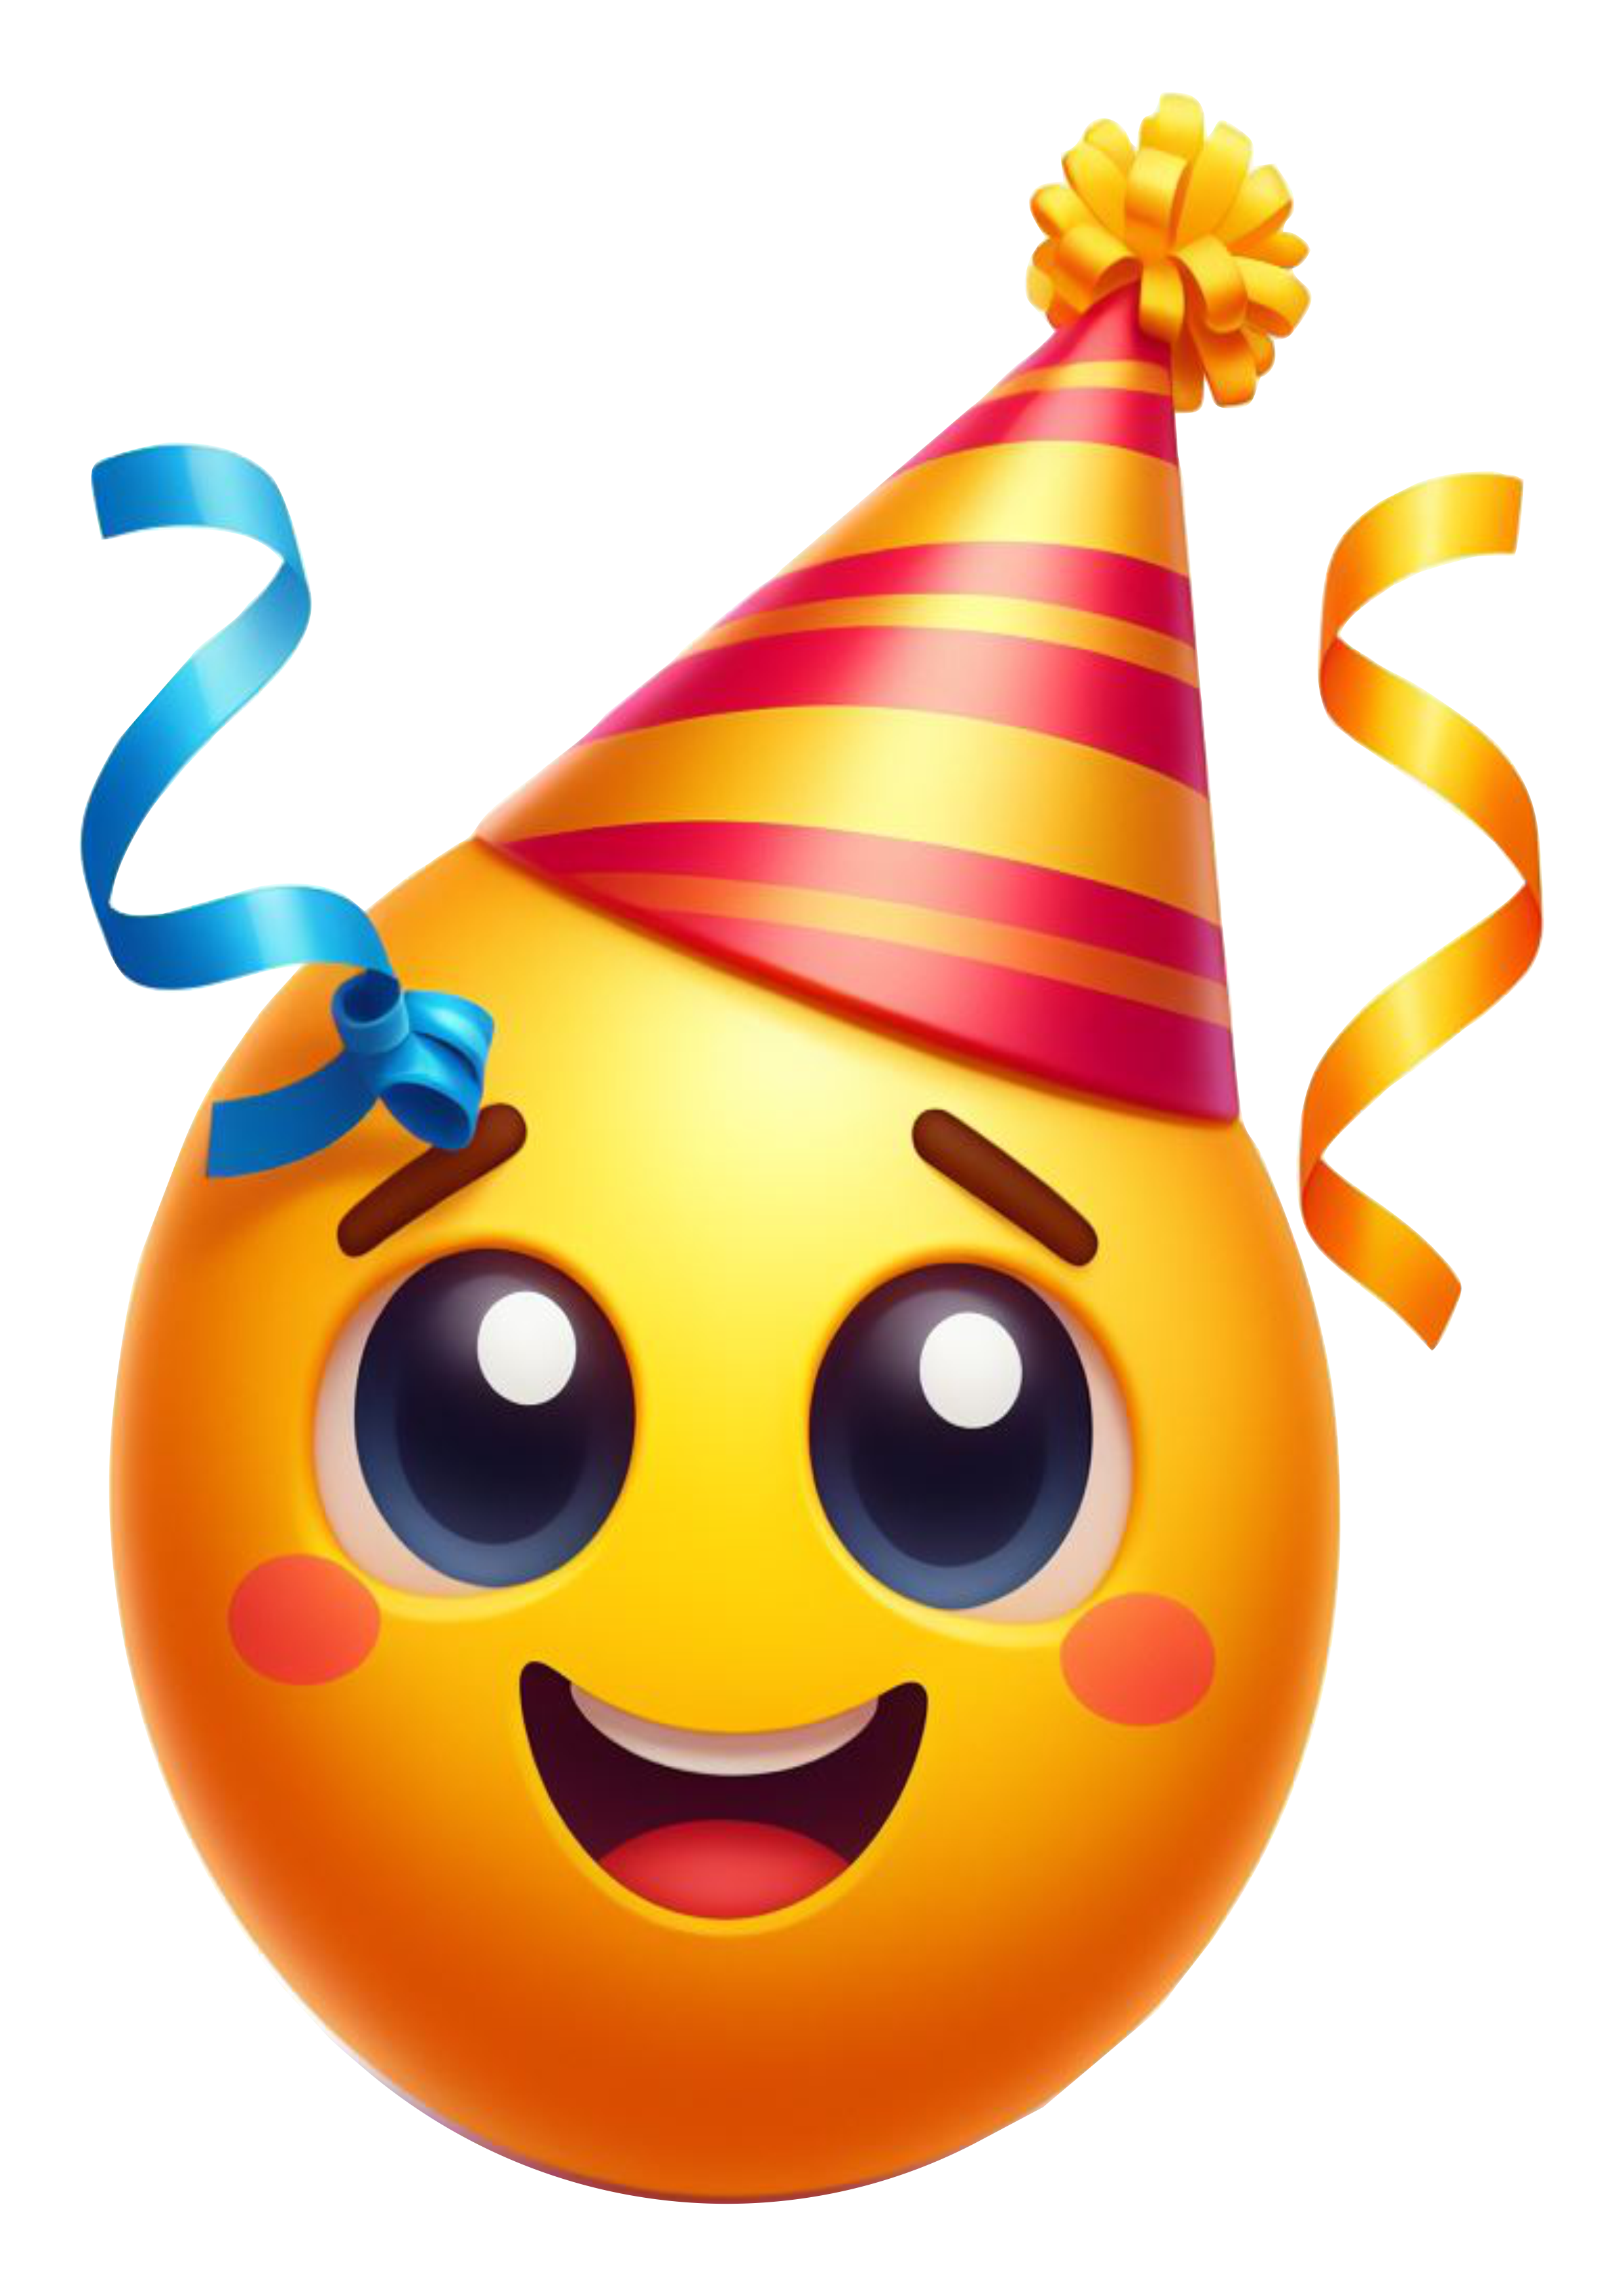 Feliz aniversário Emoji bolo parabéns figurinha engraçada whatsapp instagram facebook redes sociais artes gráficas ilustração free png